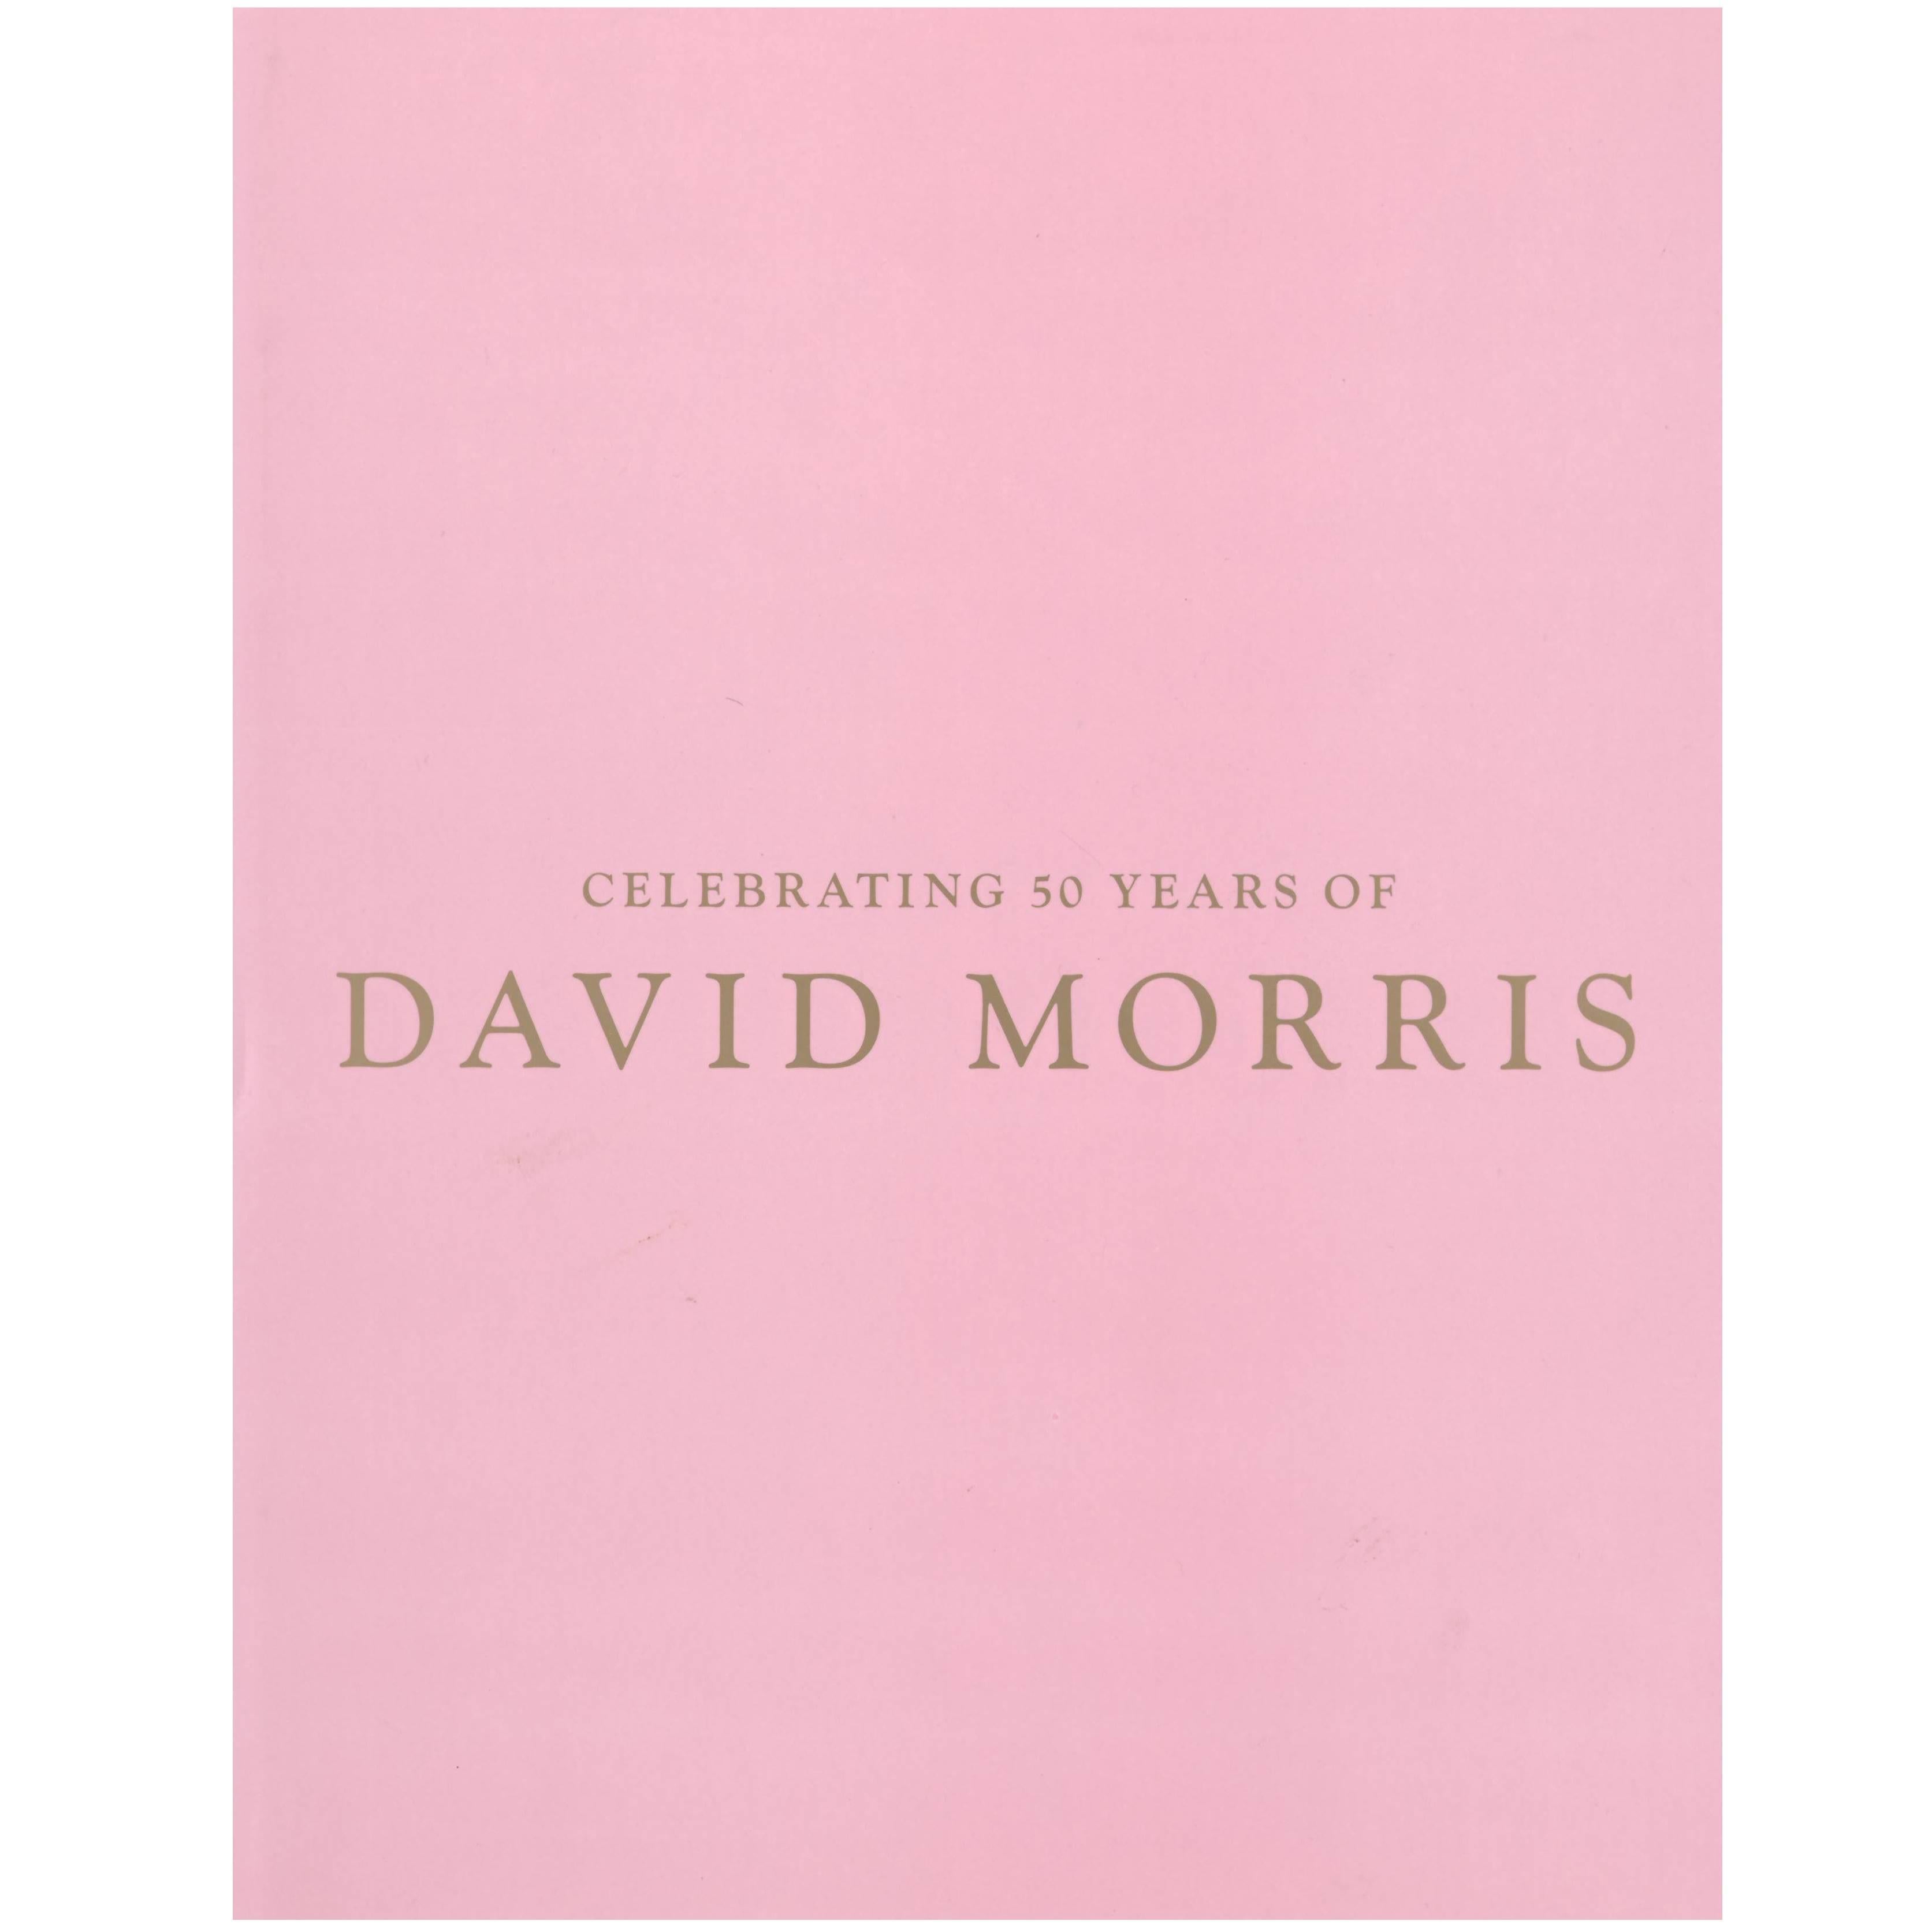 Celebrating 50 Years of David Morris, "Book"